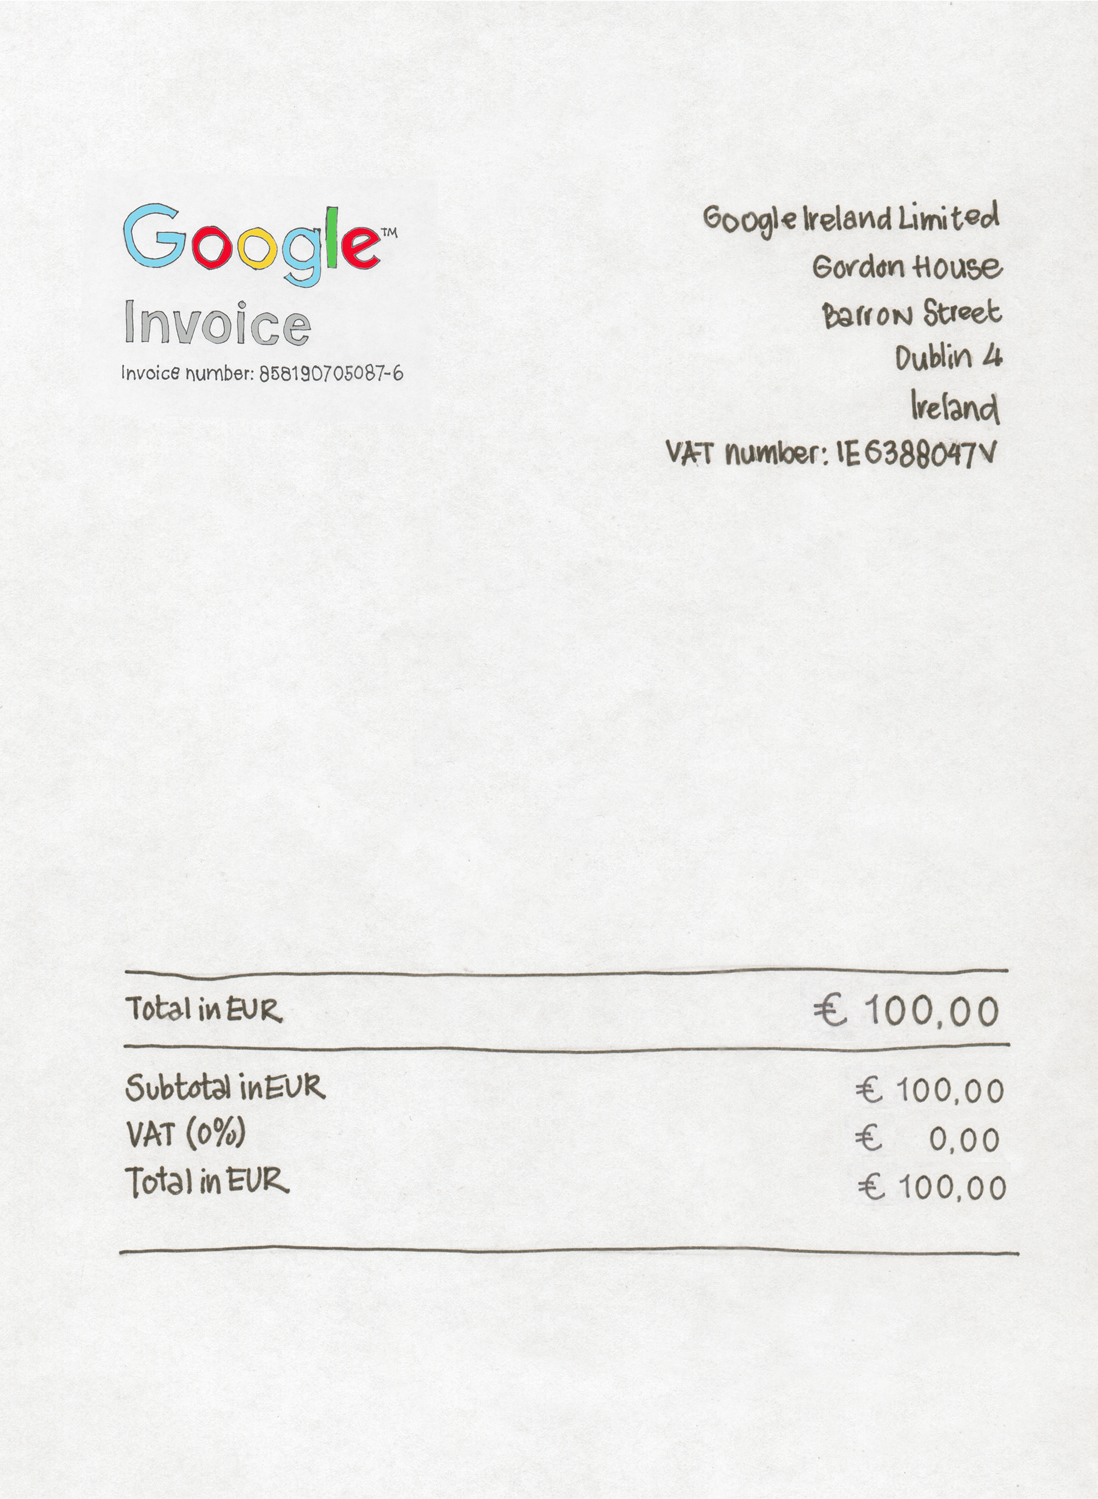 wenselijk Botsing Duidelijk maken Kun je de BTW van Googlefacturen terugvragen als voorbelasting?